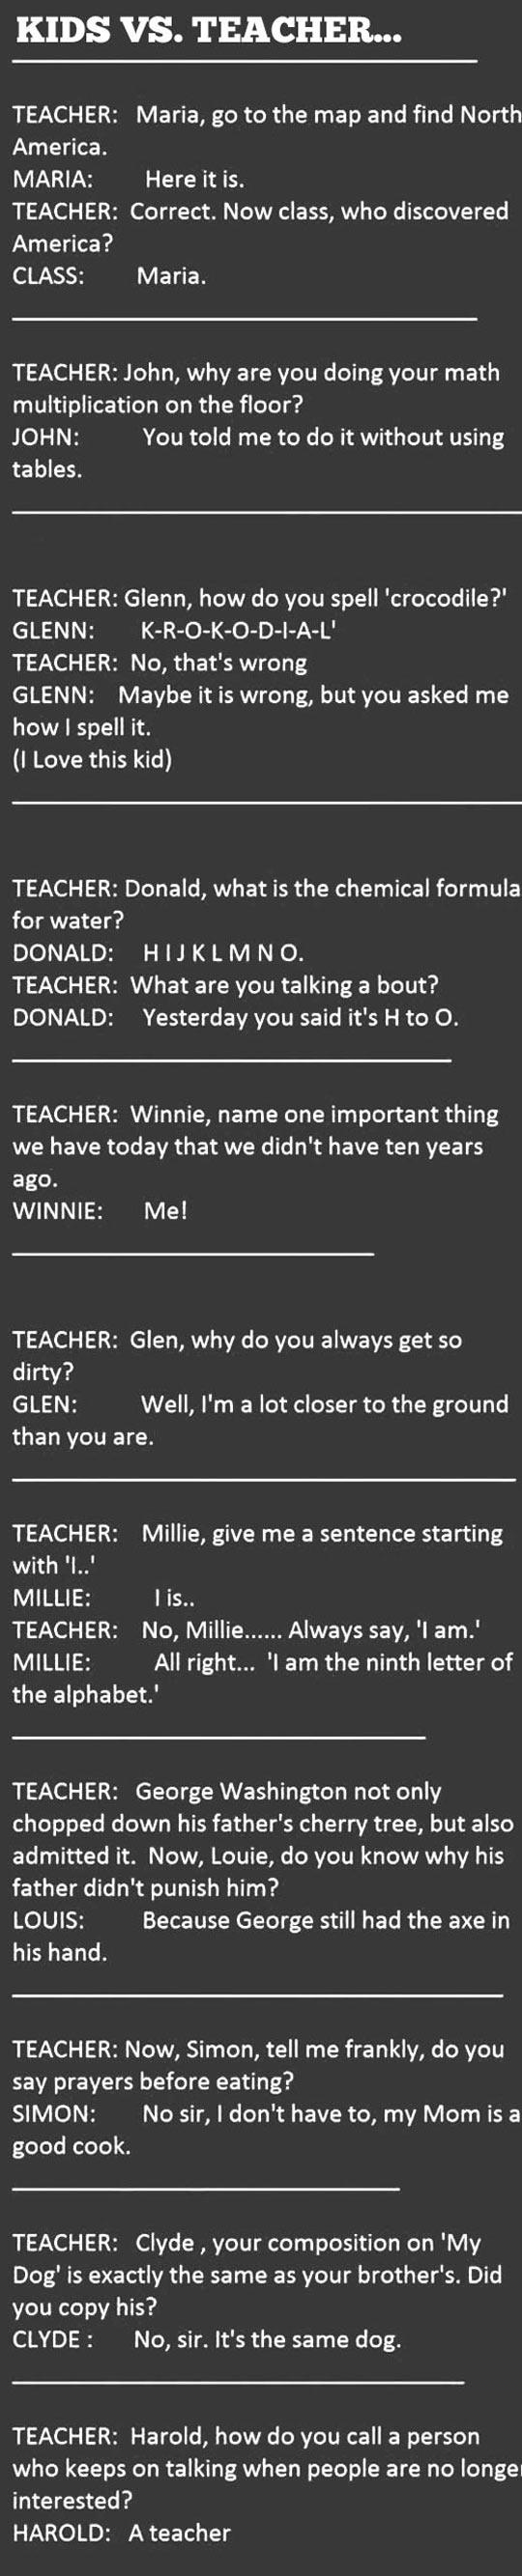 Teachers versus students